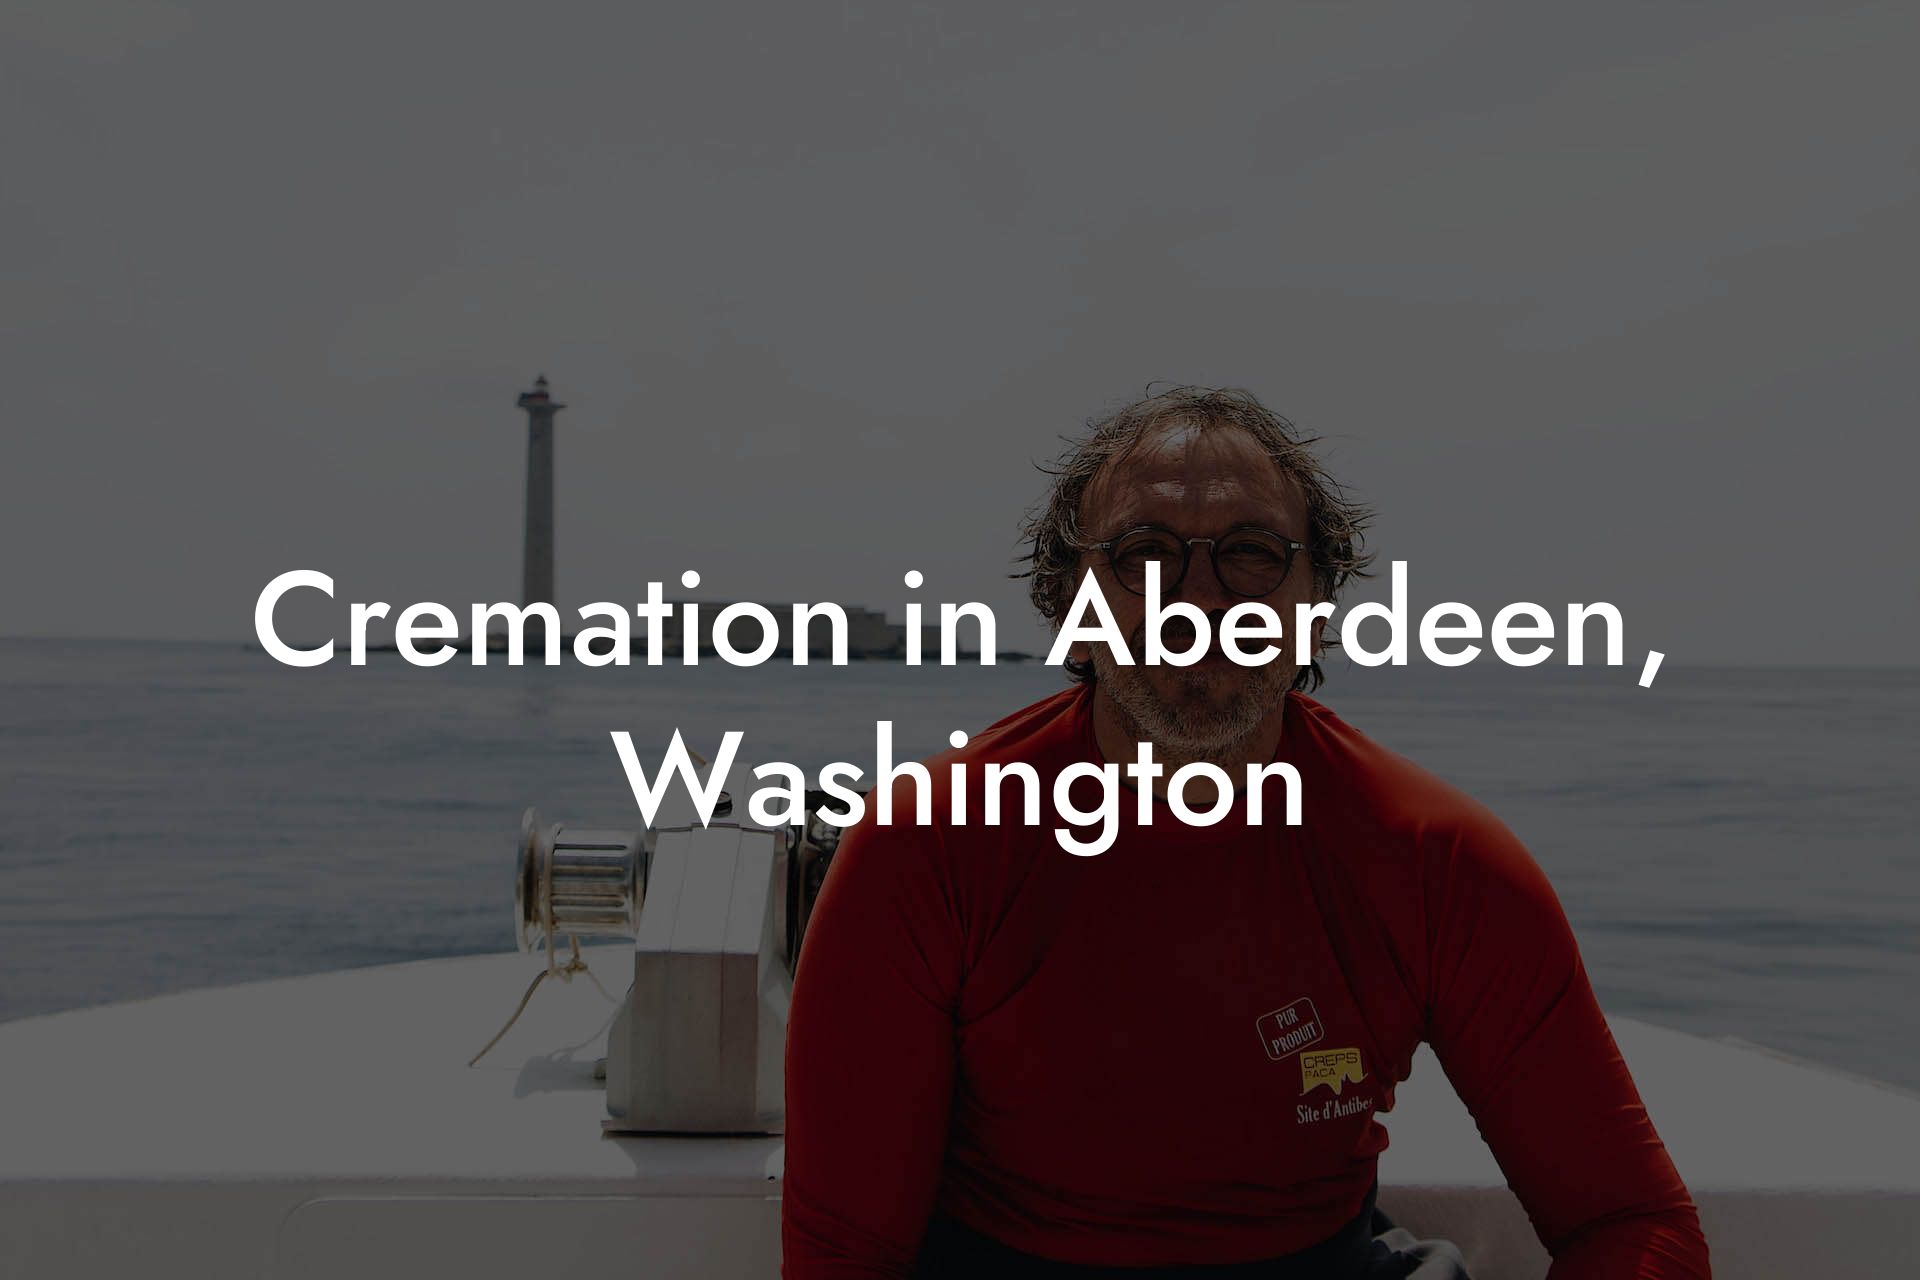 Cremation in Aberdeen, Washington